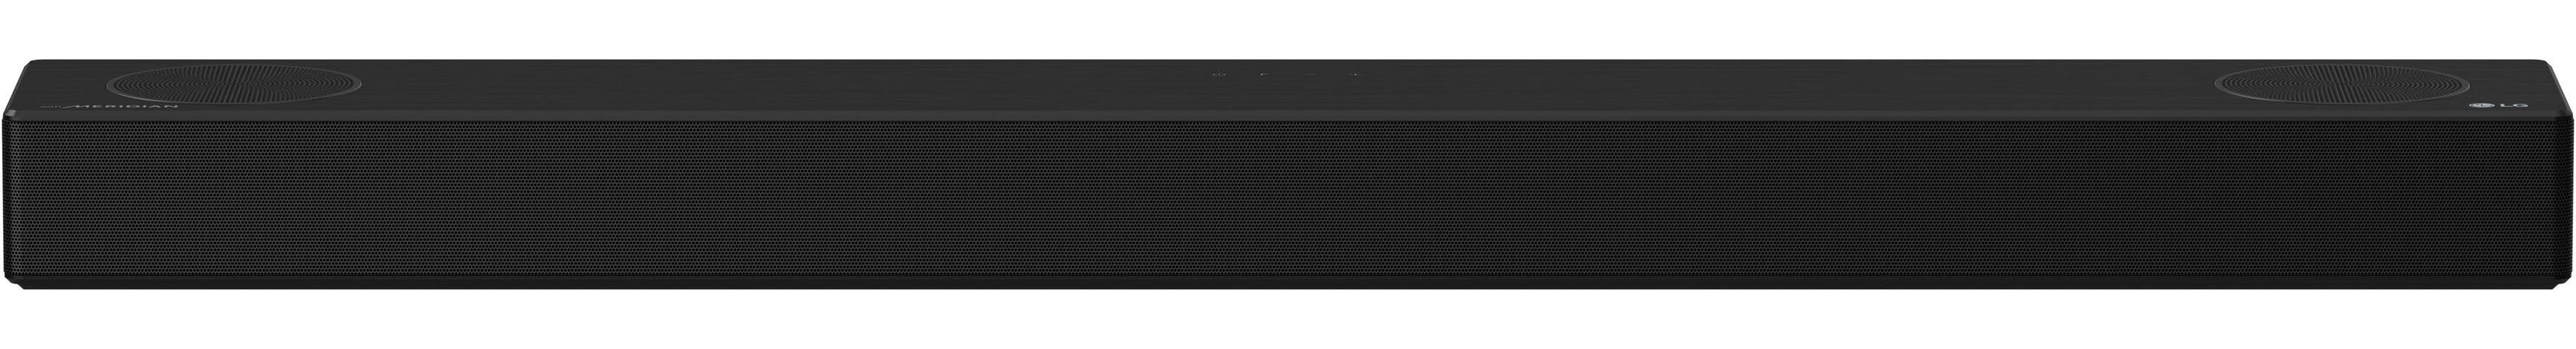 LG DSPD7Y 3.1.2 Soundbar (Bluetooth, Audio,MERIDIAN 380 Dolby W, Sound) Res / Pro,High DTS:X,AI Atmos Sound